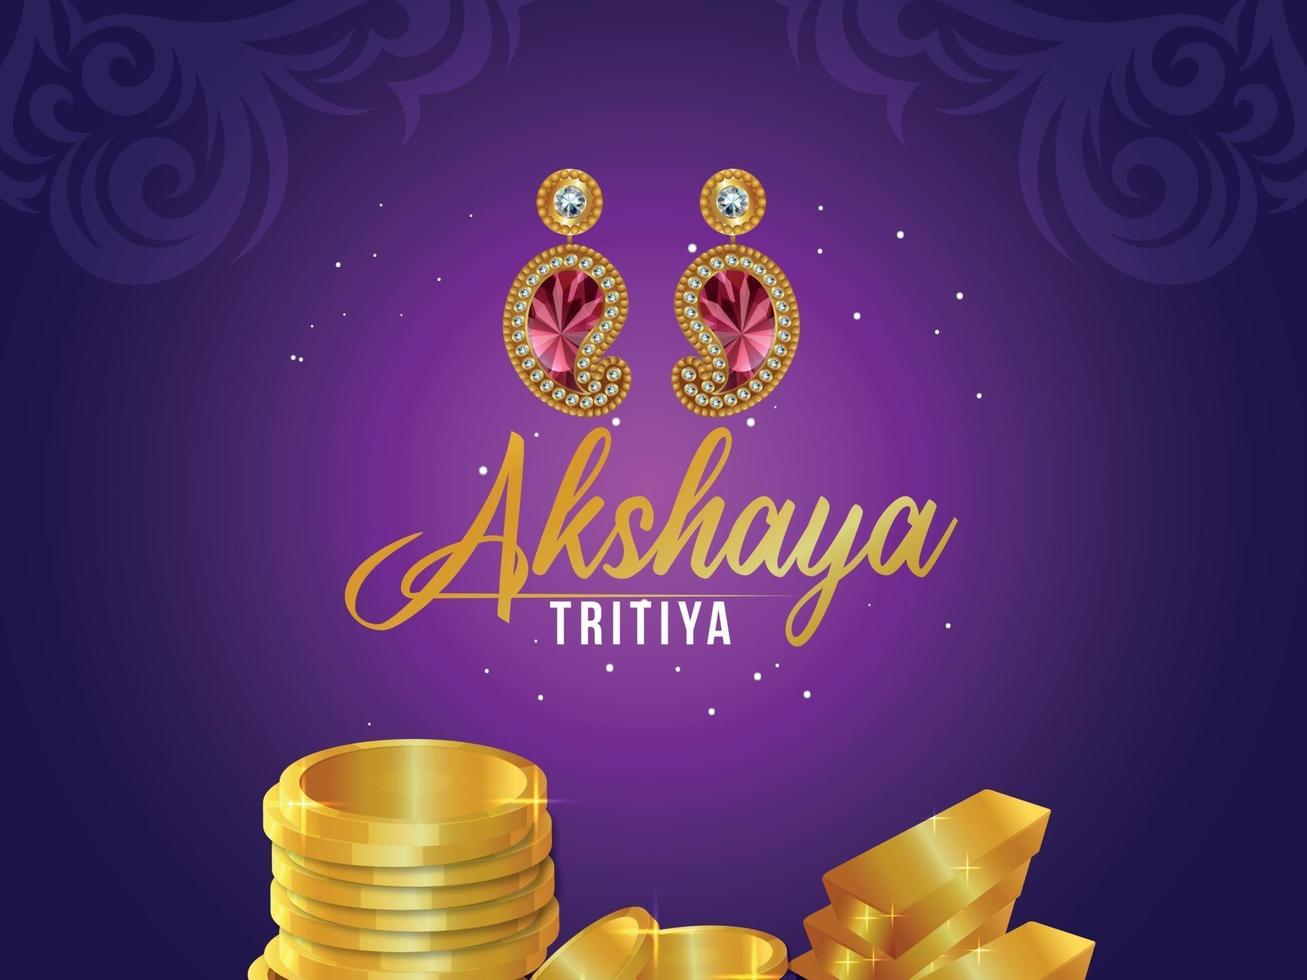 Cartaz de venda de joias indianas akshaya tritiya com kalash dourado com colar de ouro vetor